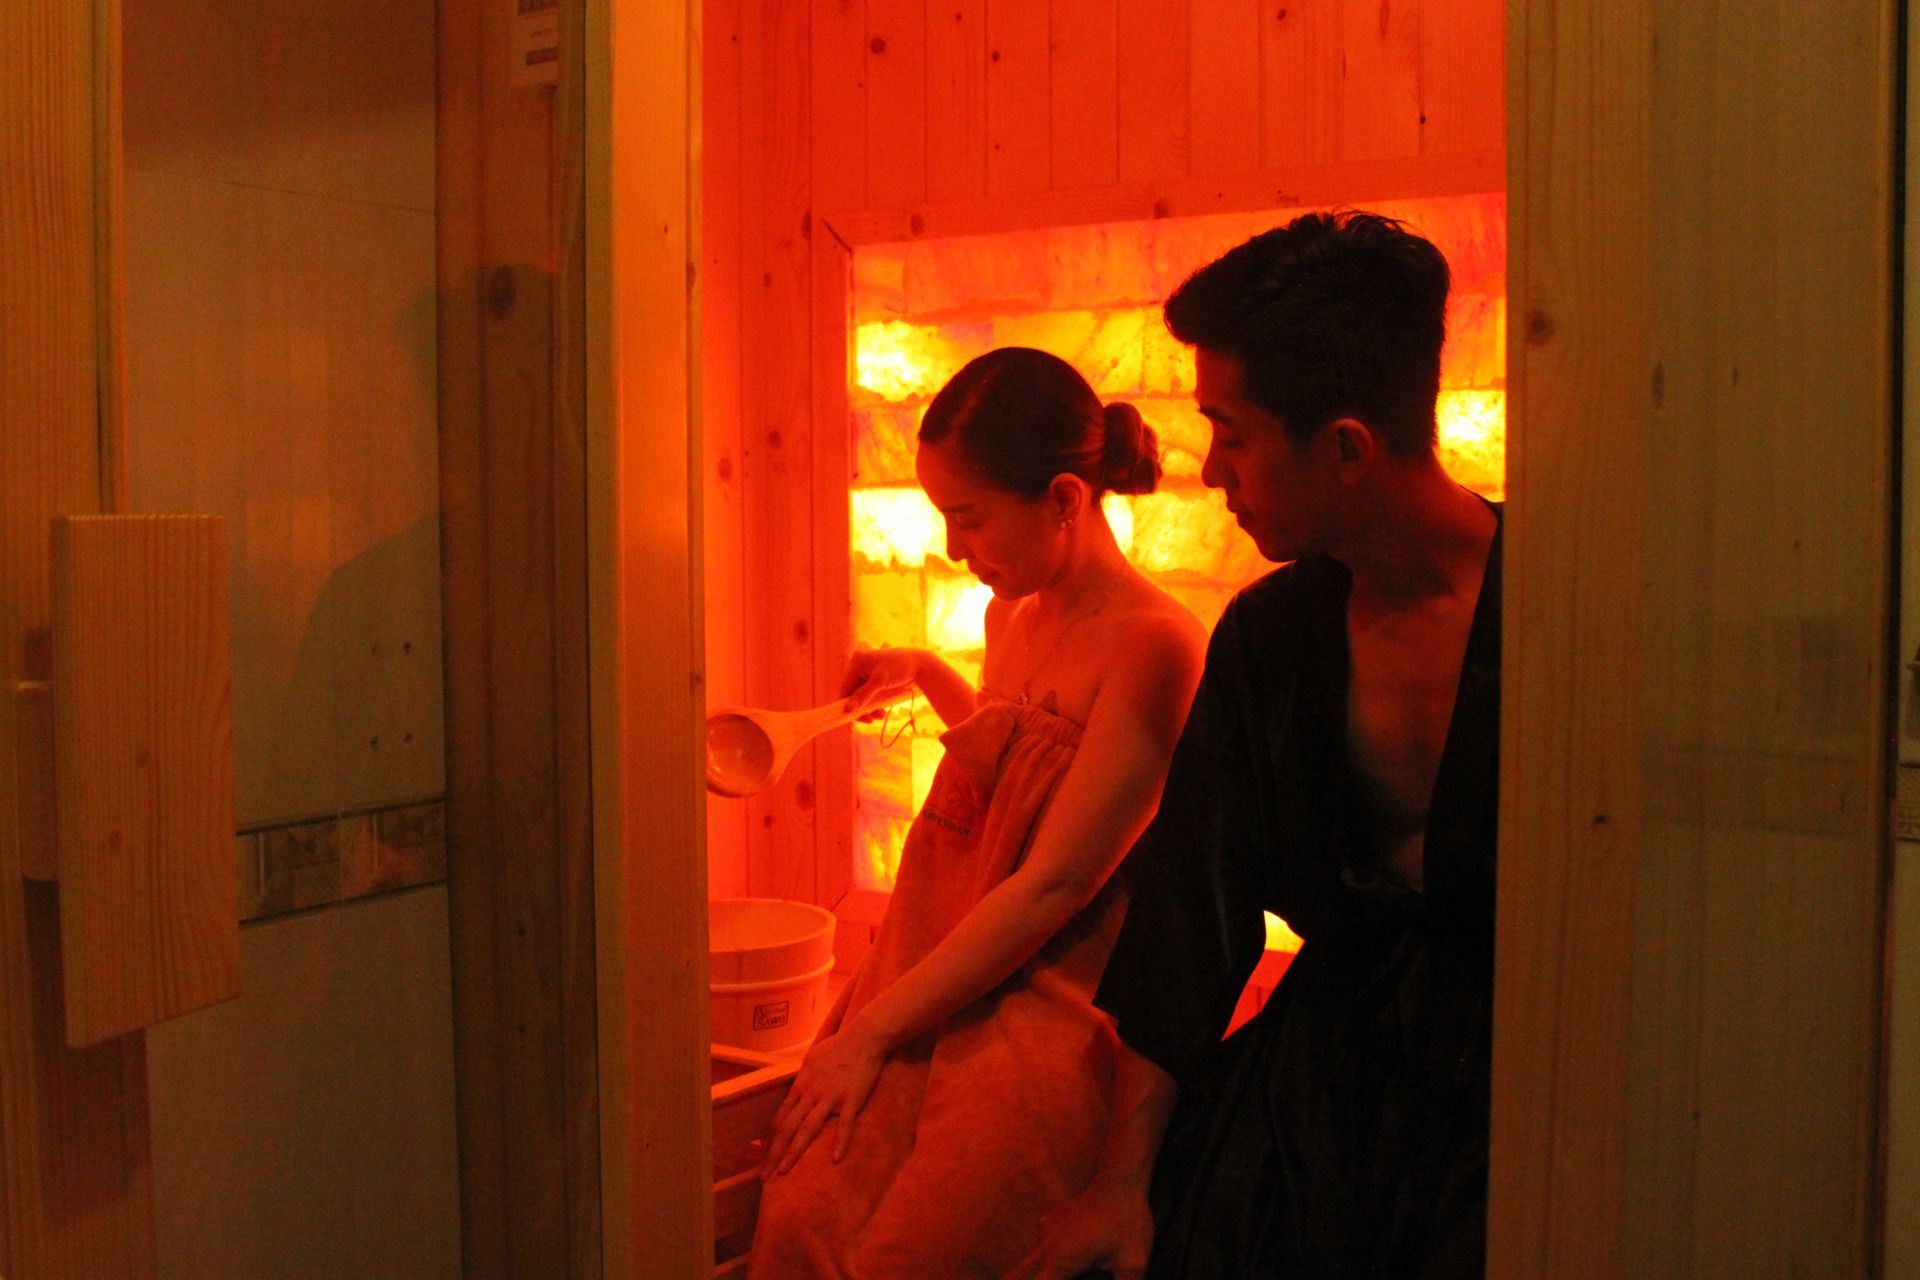 Massage cổ vai gáy cho cặp đôi - ý tưởng hẹn hò lãng mạn nhất tháng 7